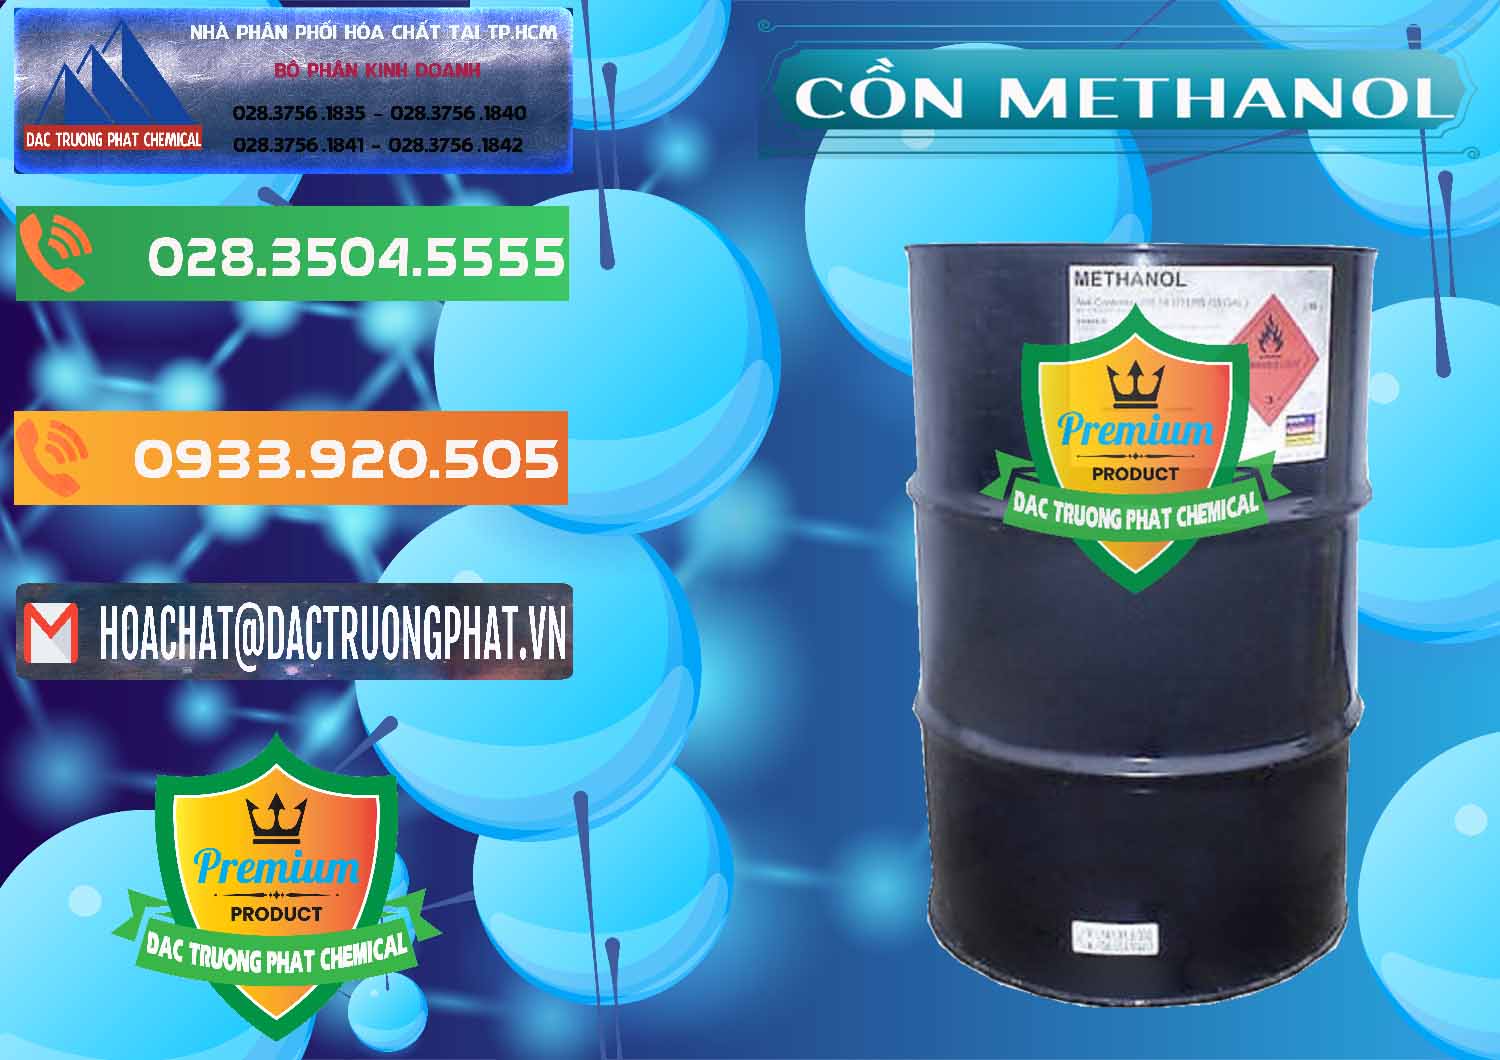 Cty chuyên cung cấp - bán Cồn Methanol - Methyl Alcohol Mã Lai Malaysia - 0331 - Công ty nhập khẩu _ phân phối hóa chất tại TP.HCM - hoachatxulynuoc.com.vn